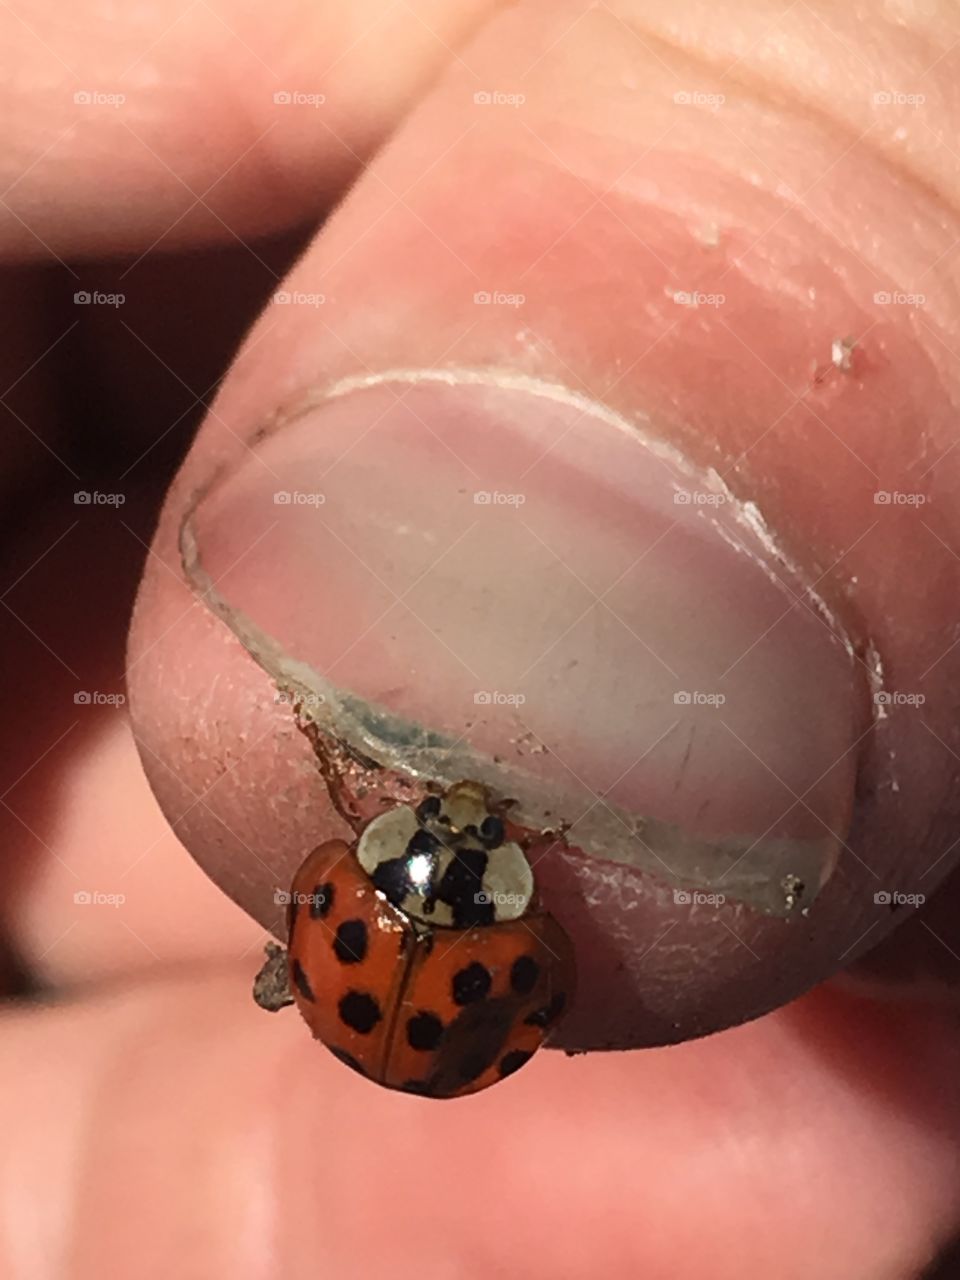 Lady bug on finger